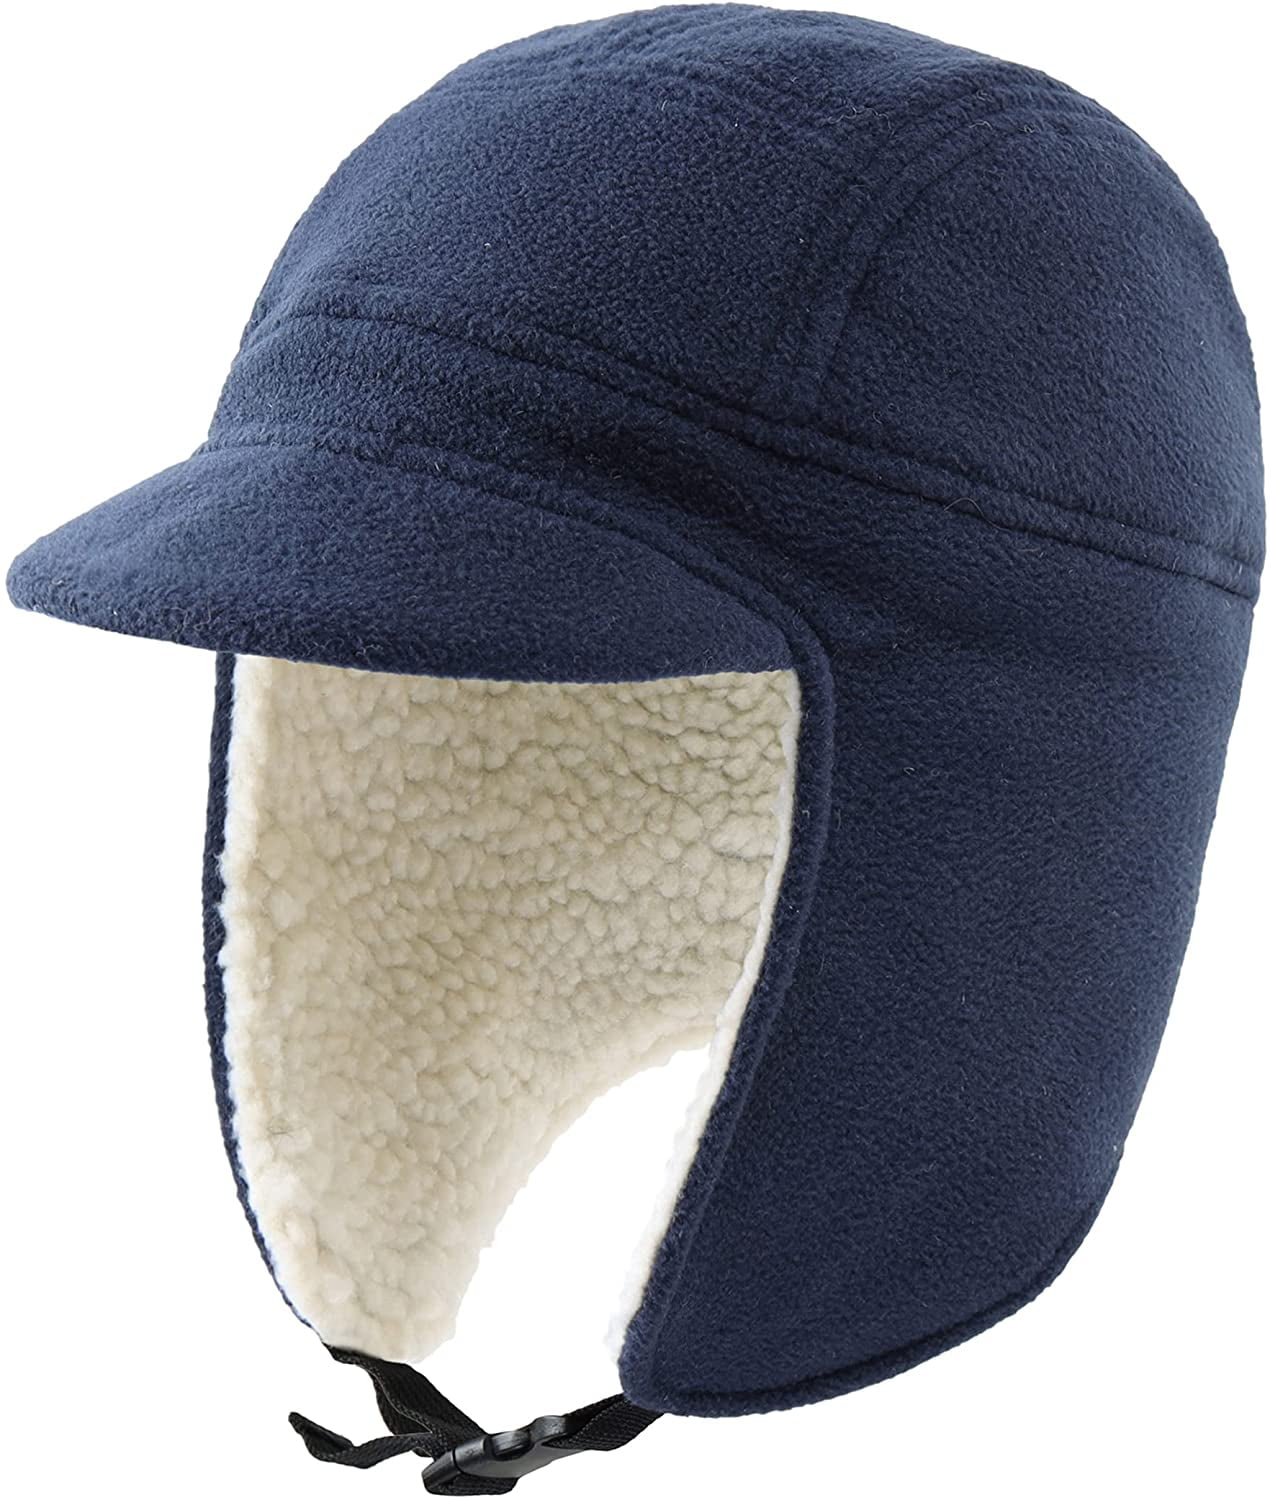 Fishing Hat with Ear Flaps. Men's Waterproof Fishing Hats, Fleece Lining. Warm Fishing Hat with Visor.